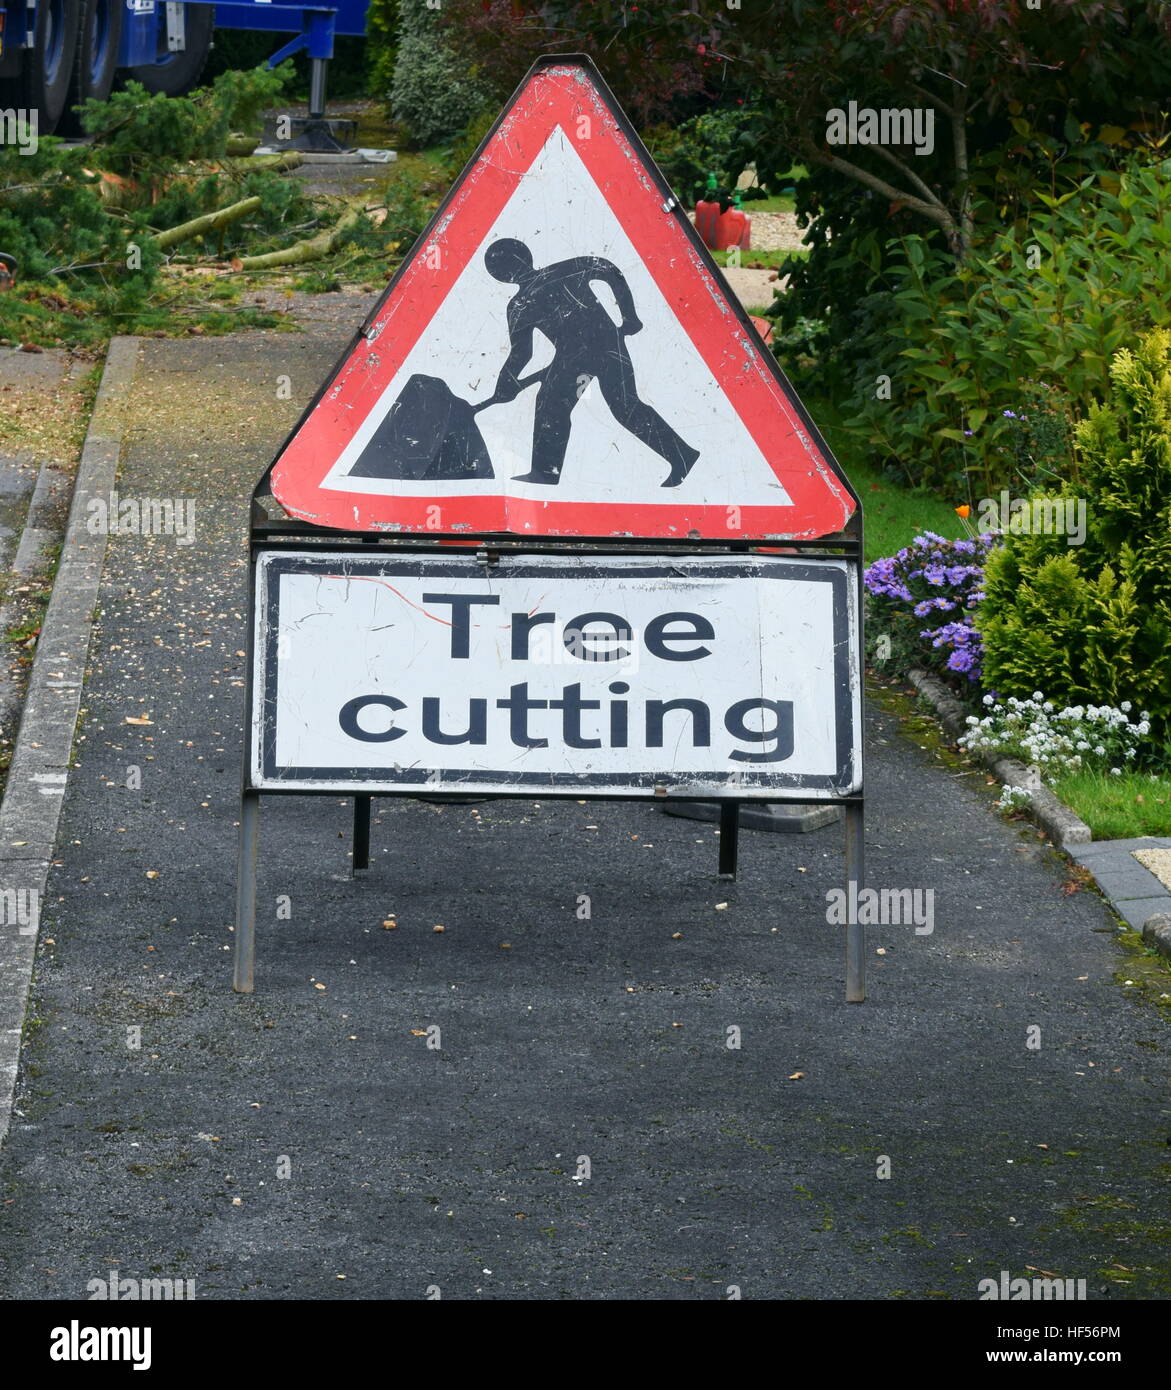 Dreieckige Warnschild auf Bürgersteig zeigt Männer in Arbeit Schneiden von Bäumen platziert Stockfoto